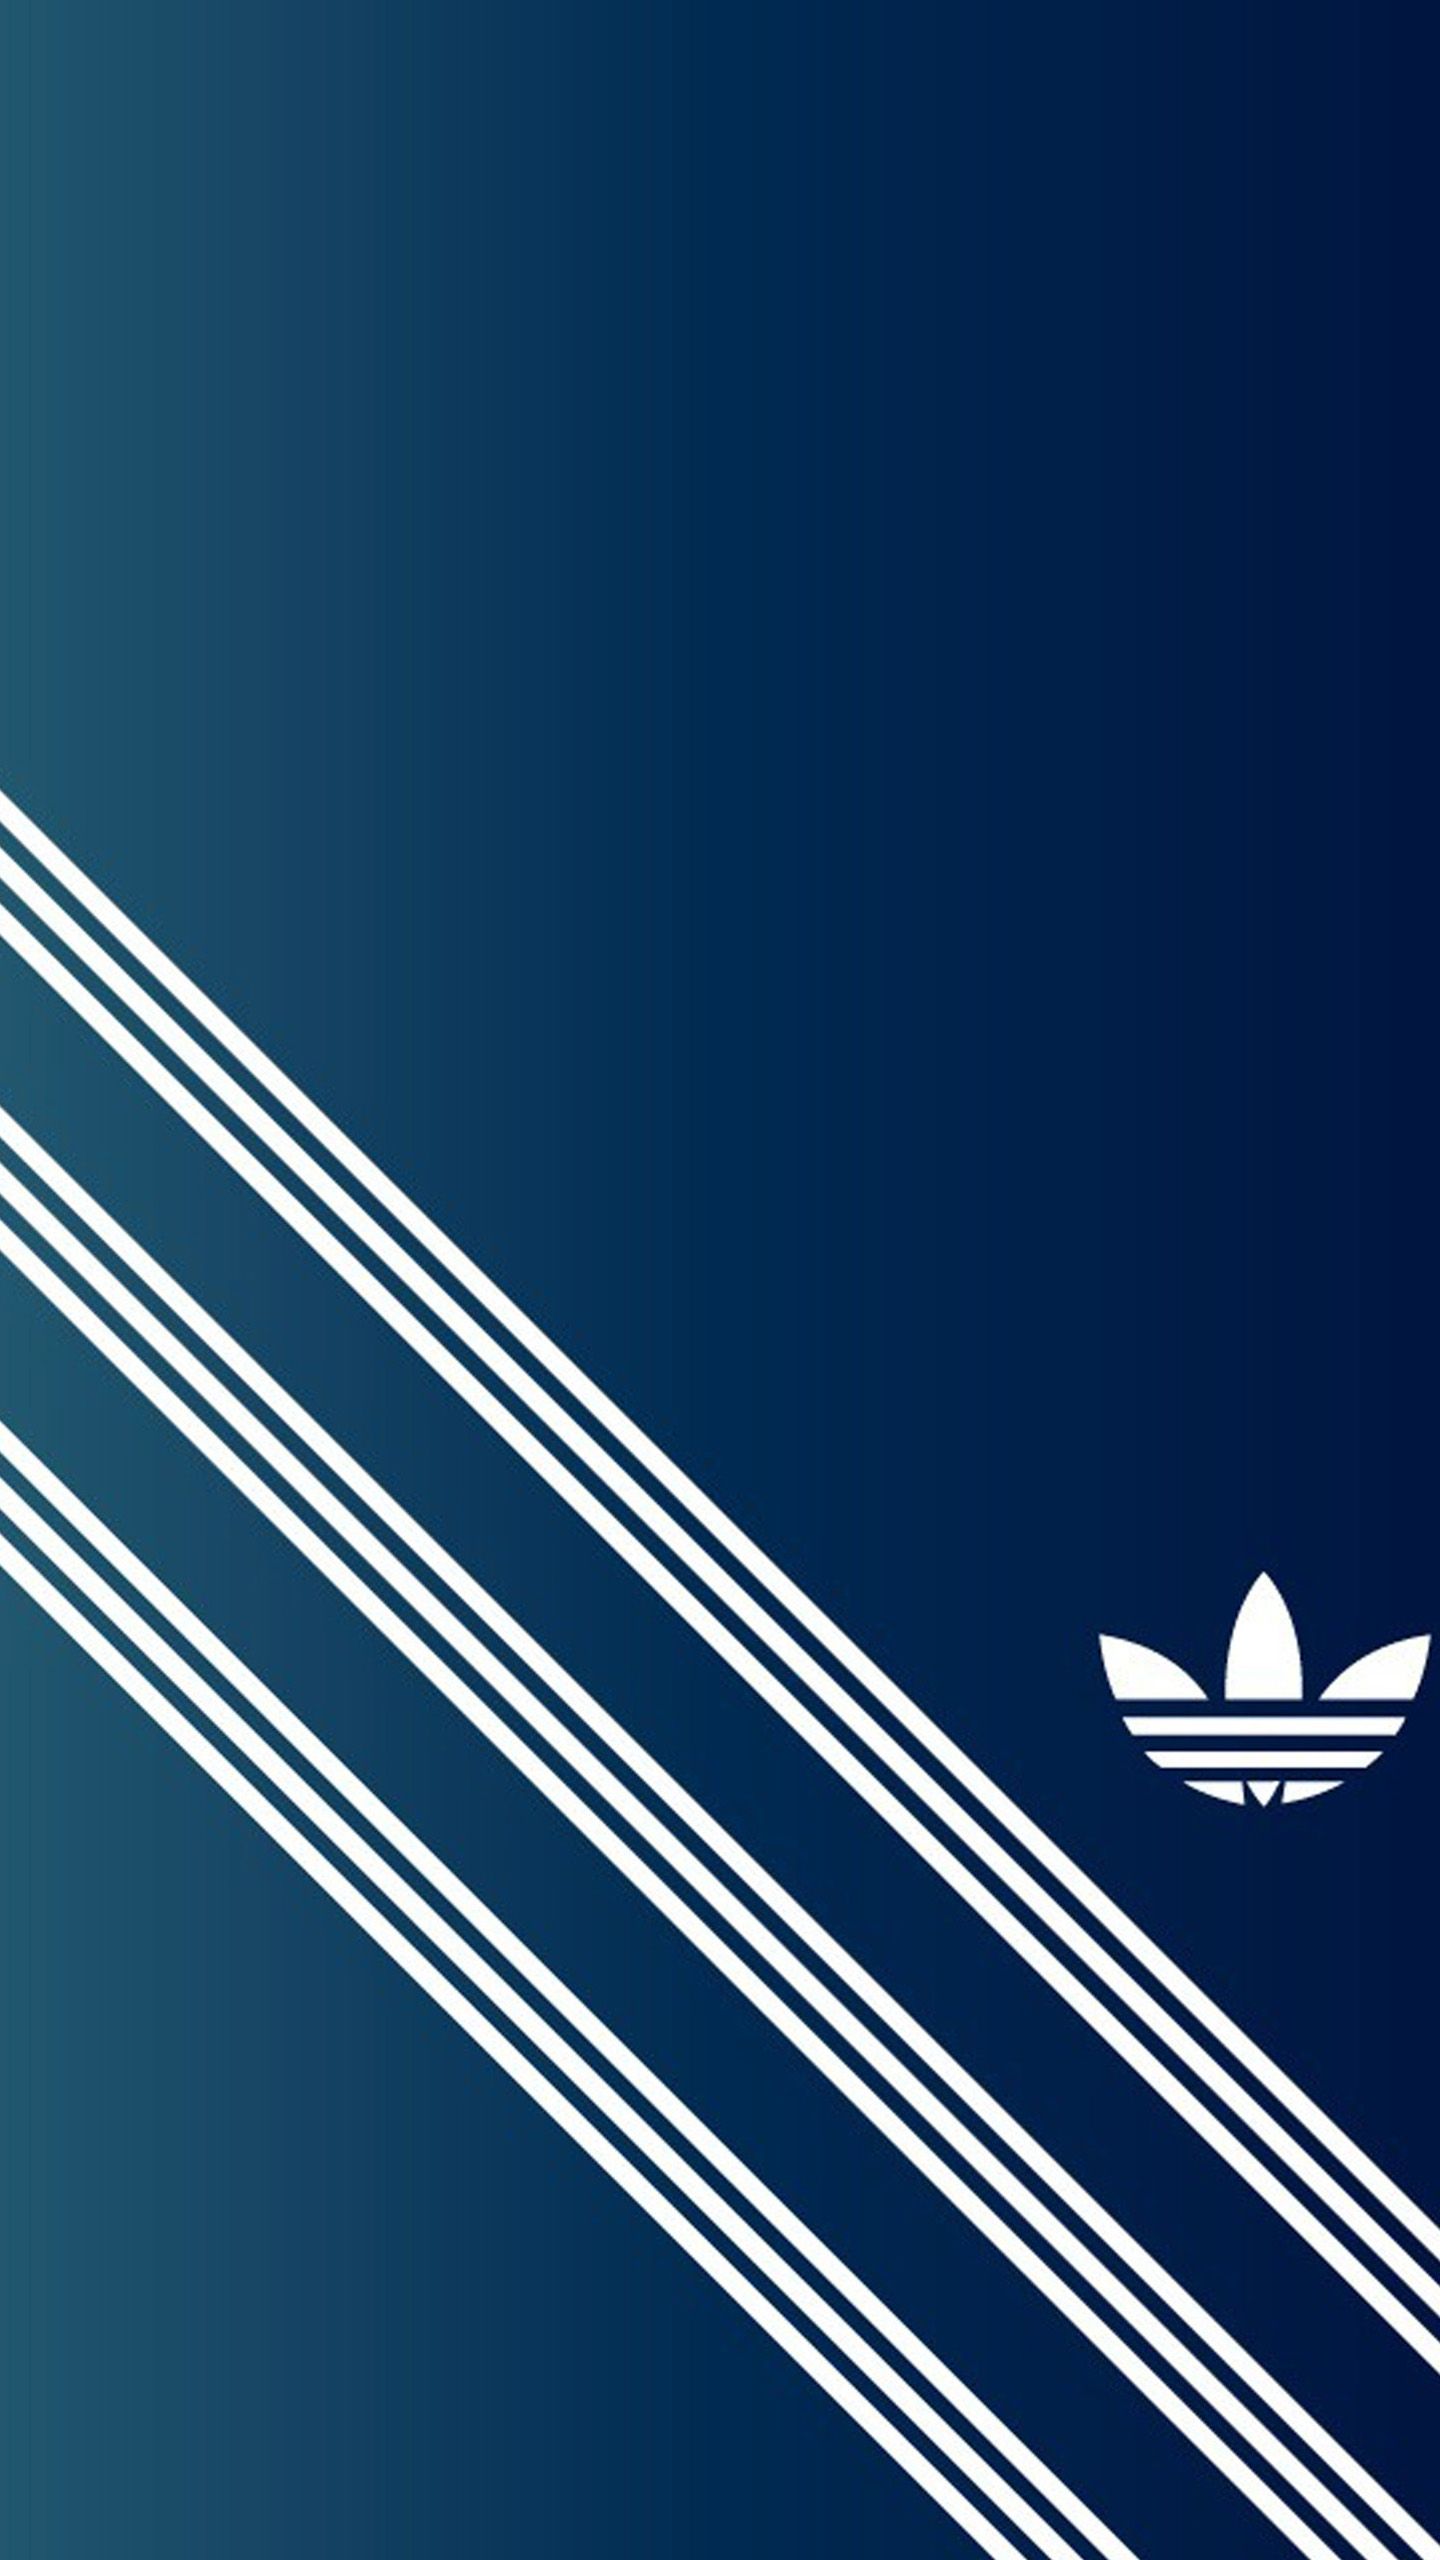 Adidas Galaxy Wallpapers